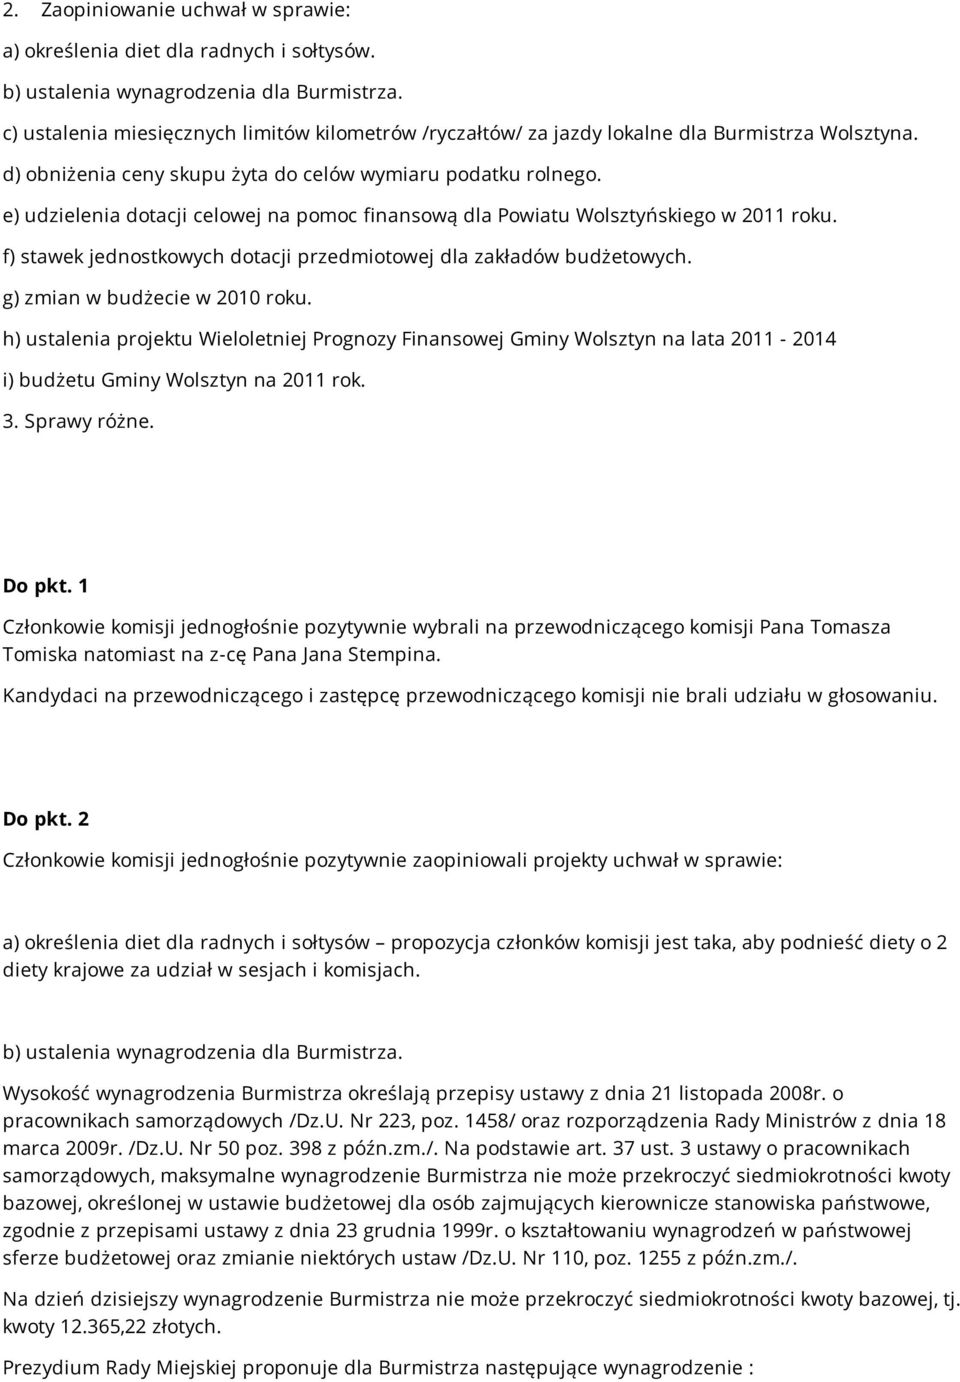 e) udzielenia dotacji celowej na pomoc finansową dla Powiatu Wolsztyńskiego w 2011 roku. f) stawek jednostkowych dotacji przedmiotowej dla zakładów budżetowych. g) zmian w budżecie w 2010 roku.